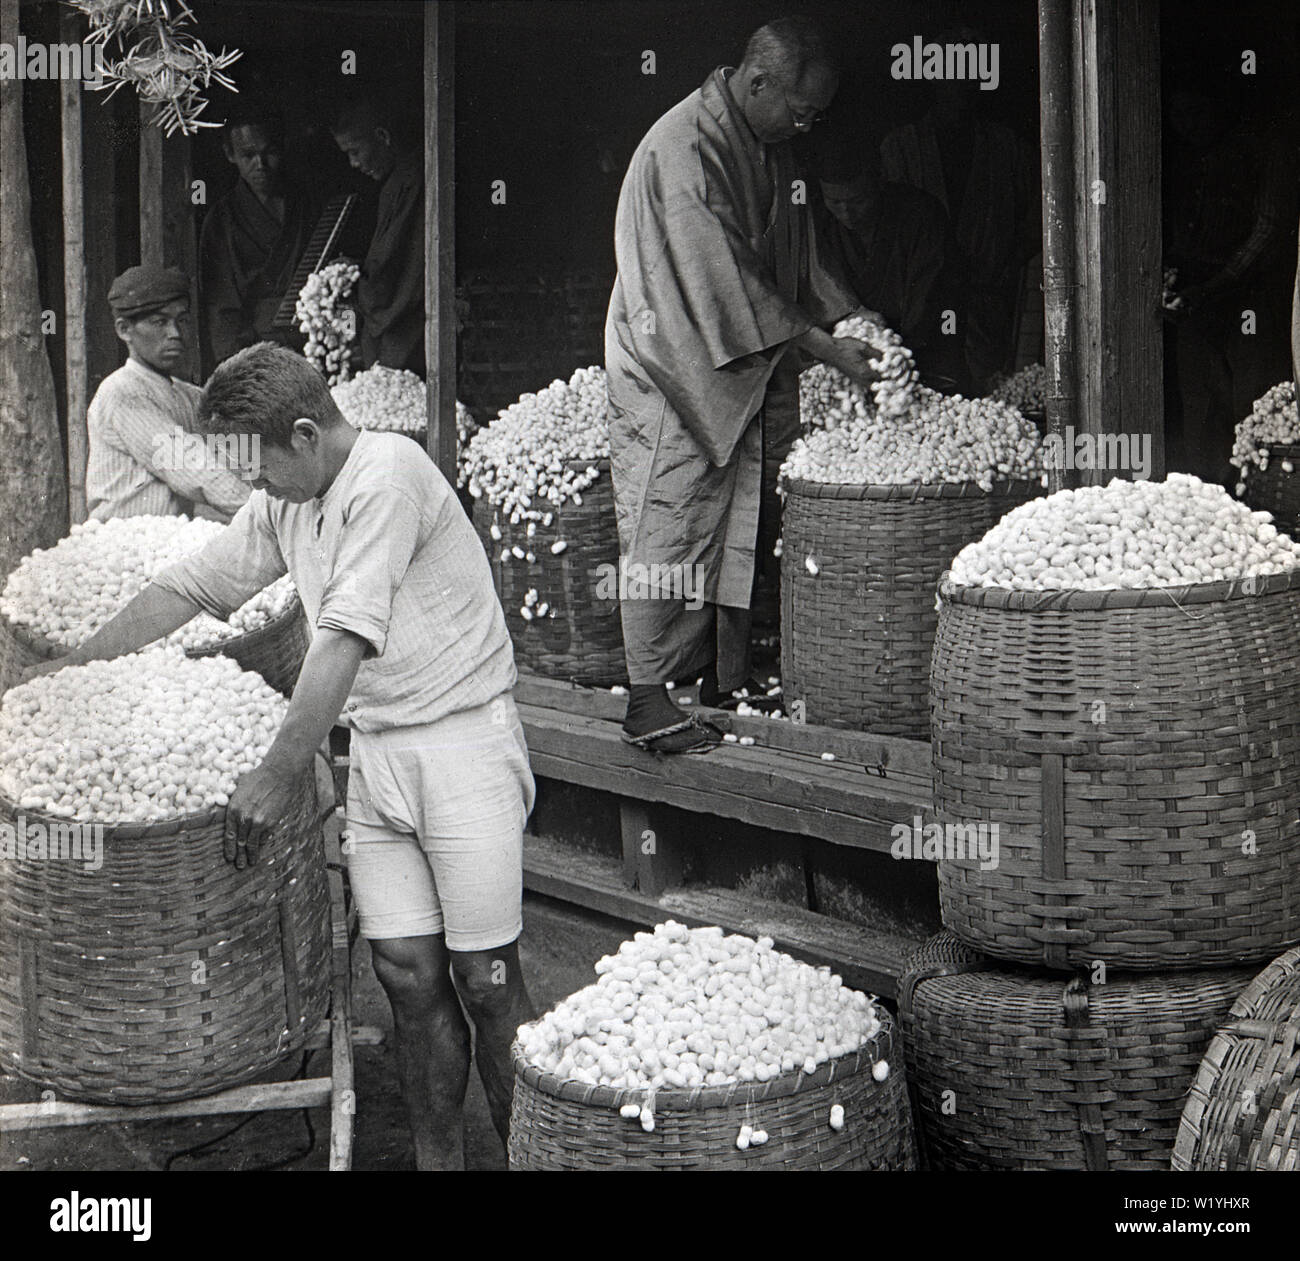 [1930er Jahre Japan - Prüfung der Seide Kokons] - vier Männer, von denen sehr leger gekleidet, untersuchen Kokons von Seide Landwirte in Shizuoka gebracht. 20. Jahrhundert vintage Glas schieben. Stockfoto